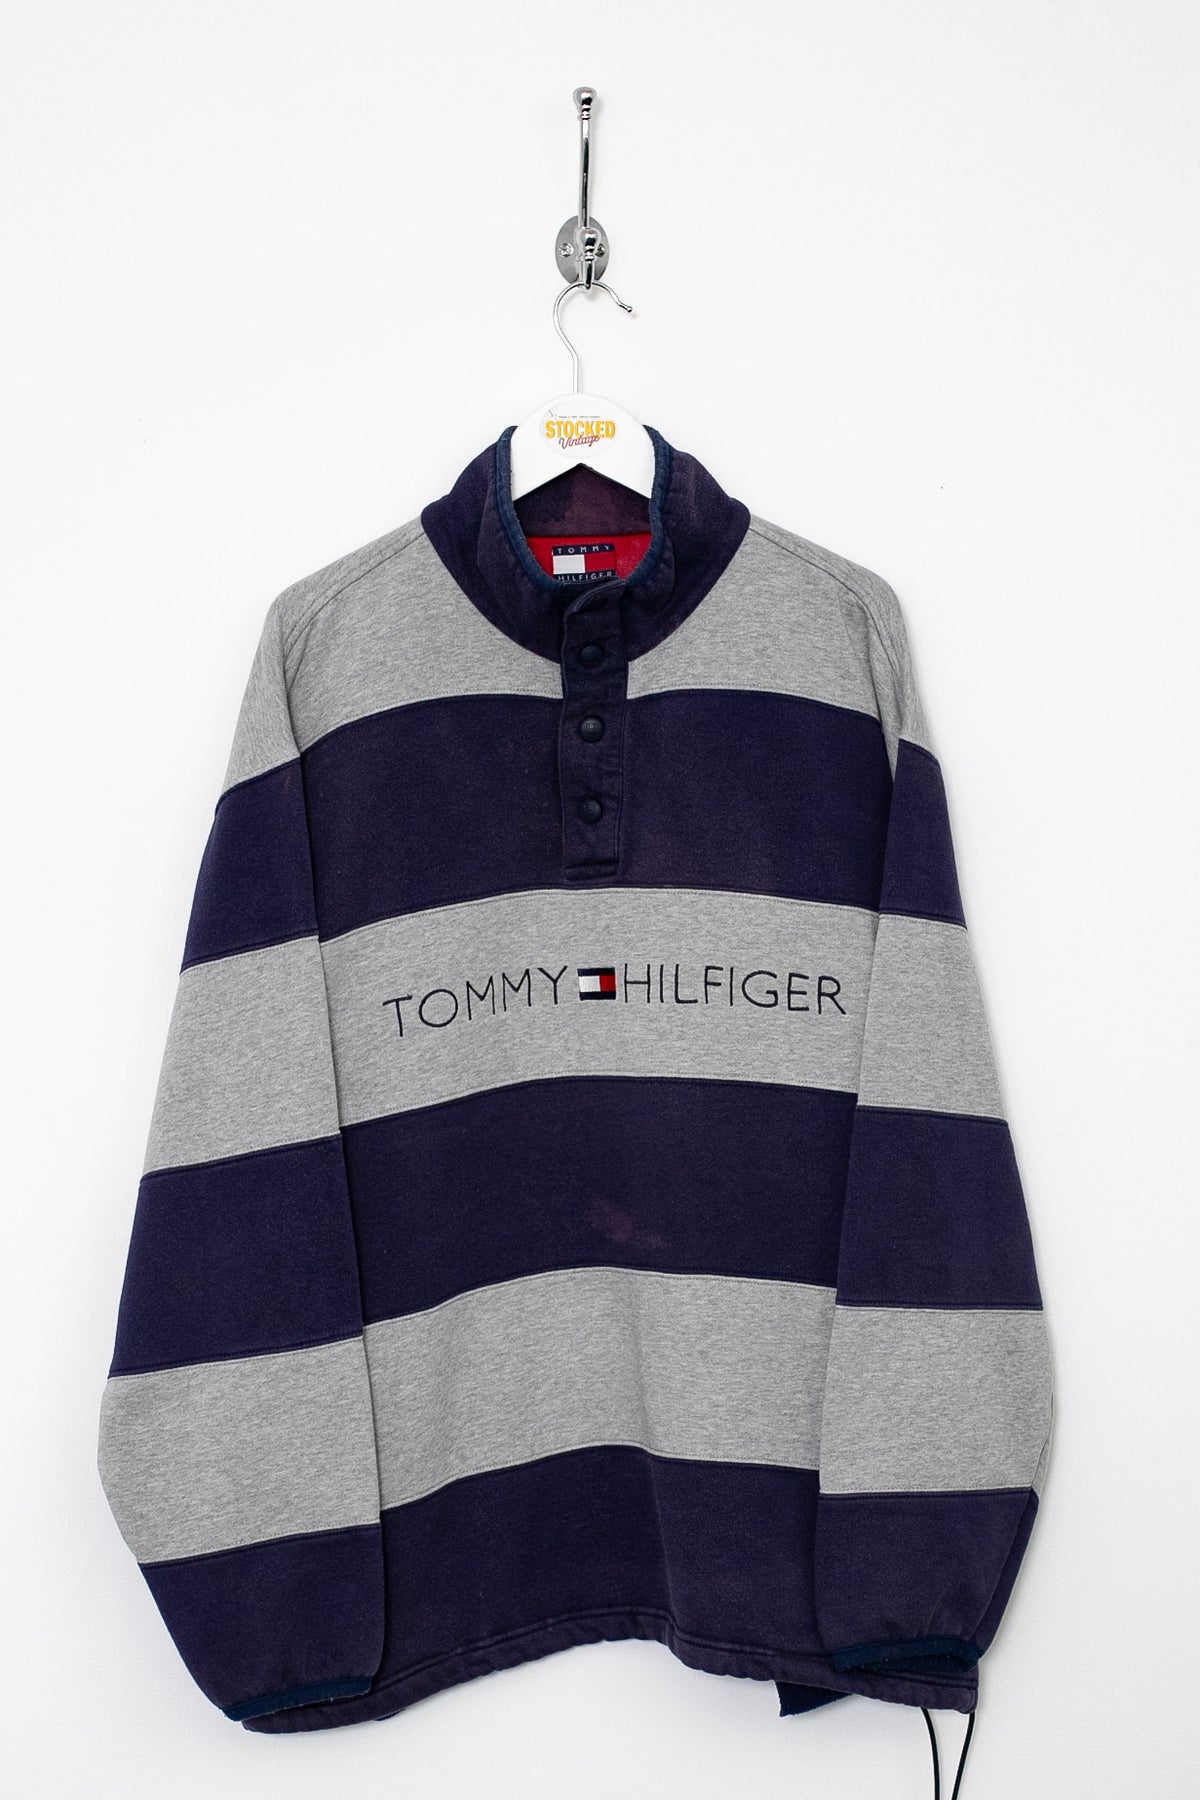 90s Tommy Hilfiger Popper Sweatshirt (M)